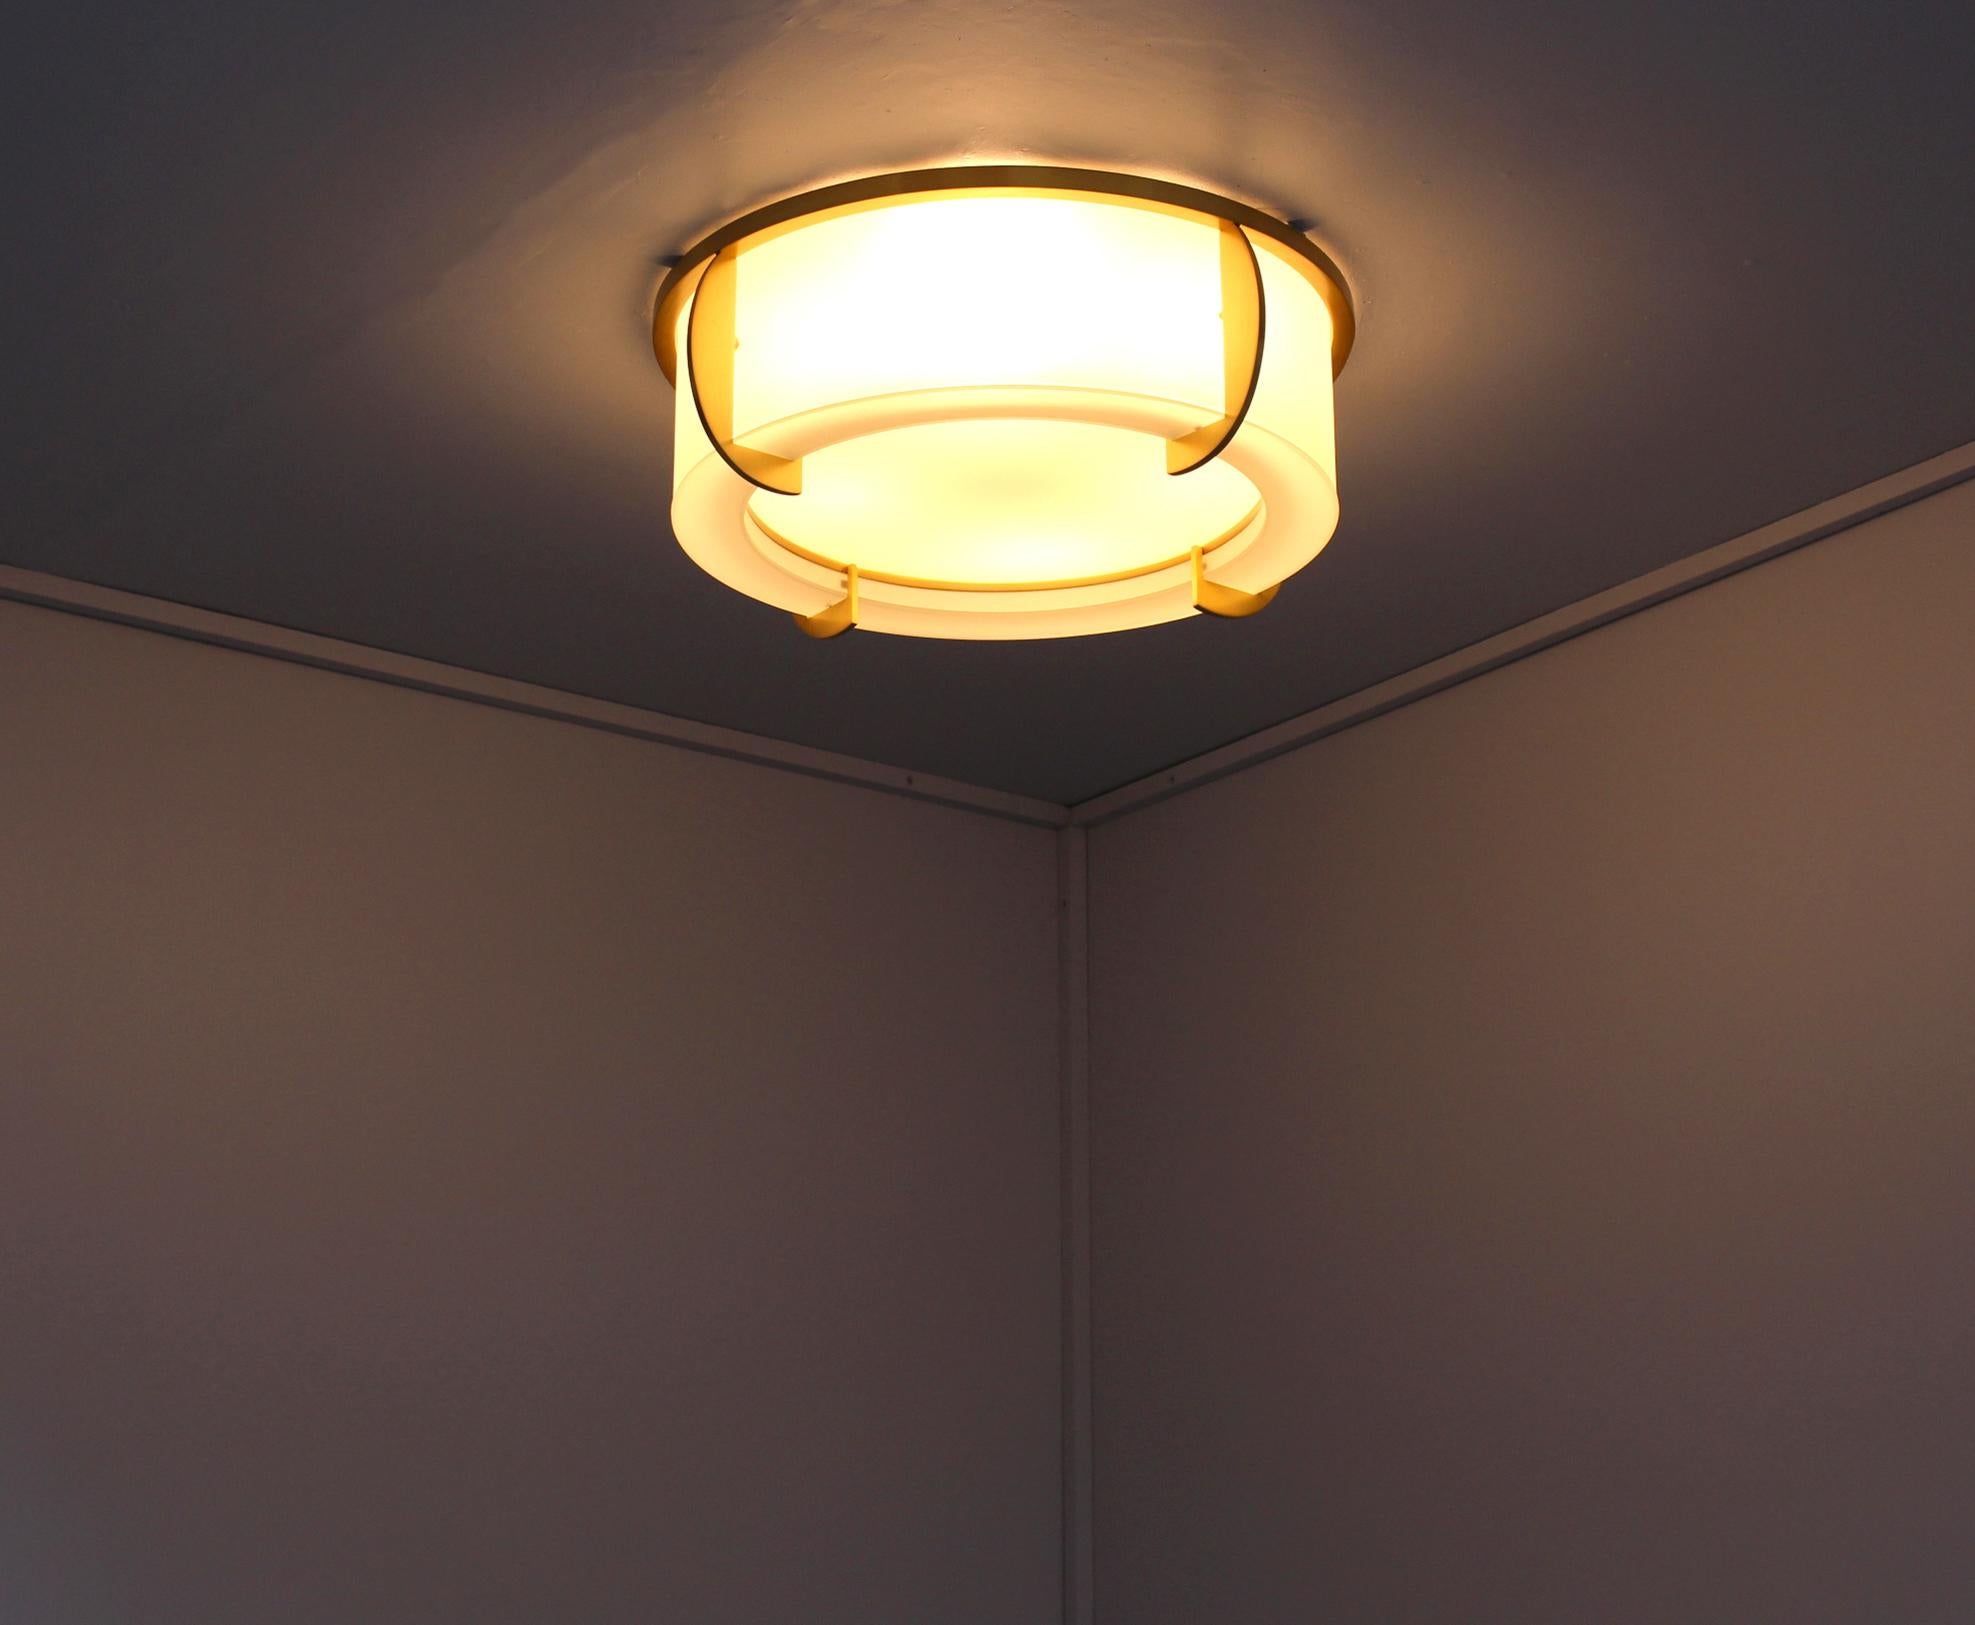 jean perzel ceiling light